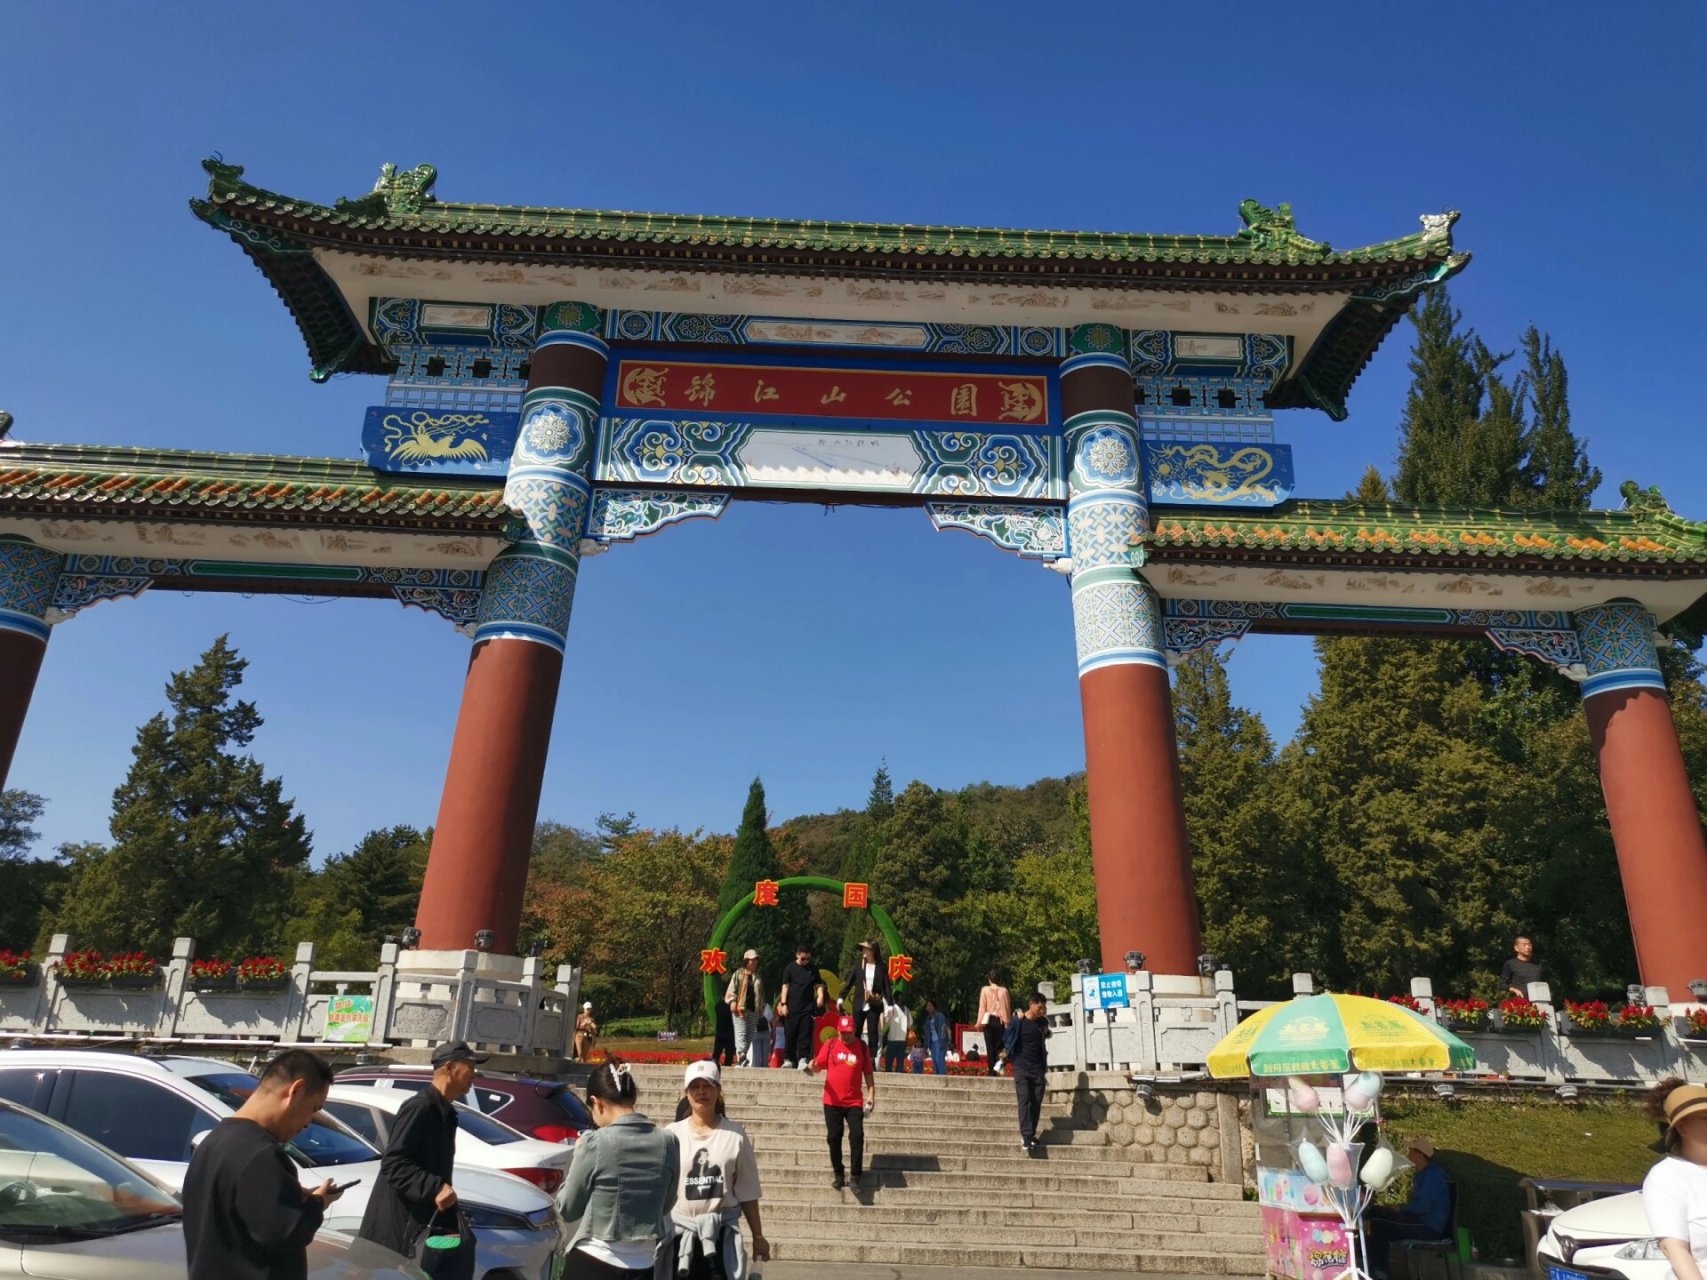 锦江山公园 历史很悠久的公园,据说是丹东人从小玩到大的公园,里边分